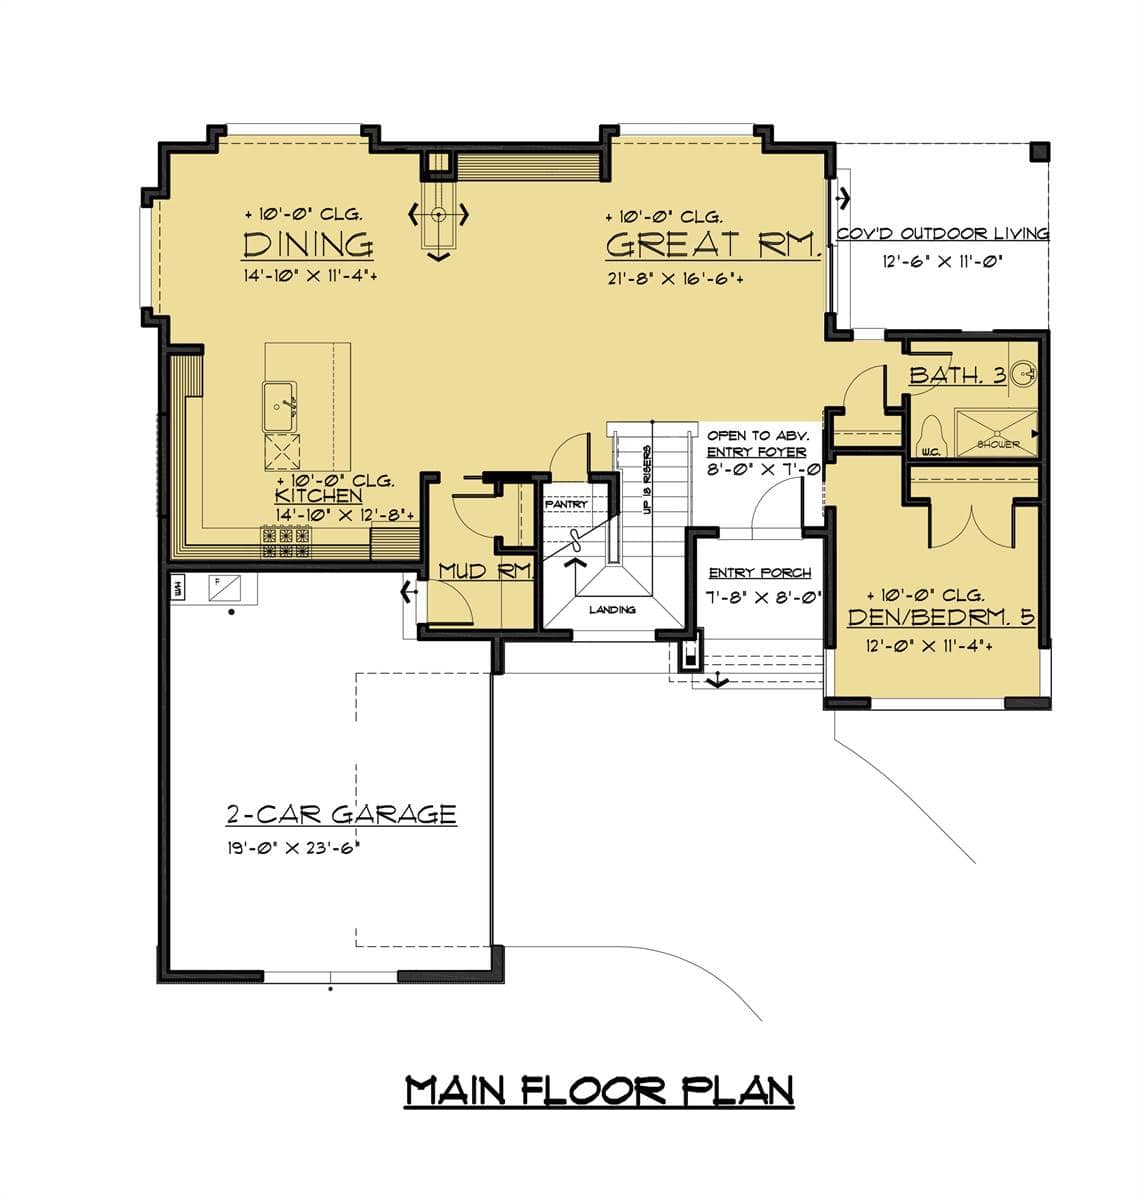 两层四卧室现代风格住宅的主层平面图，带入口门廊，大房间，共享餐厅和厨房，以及多功能书房/卧室。